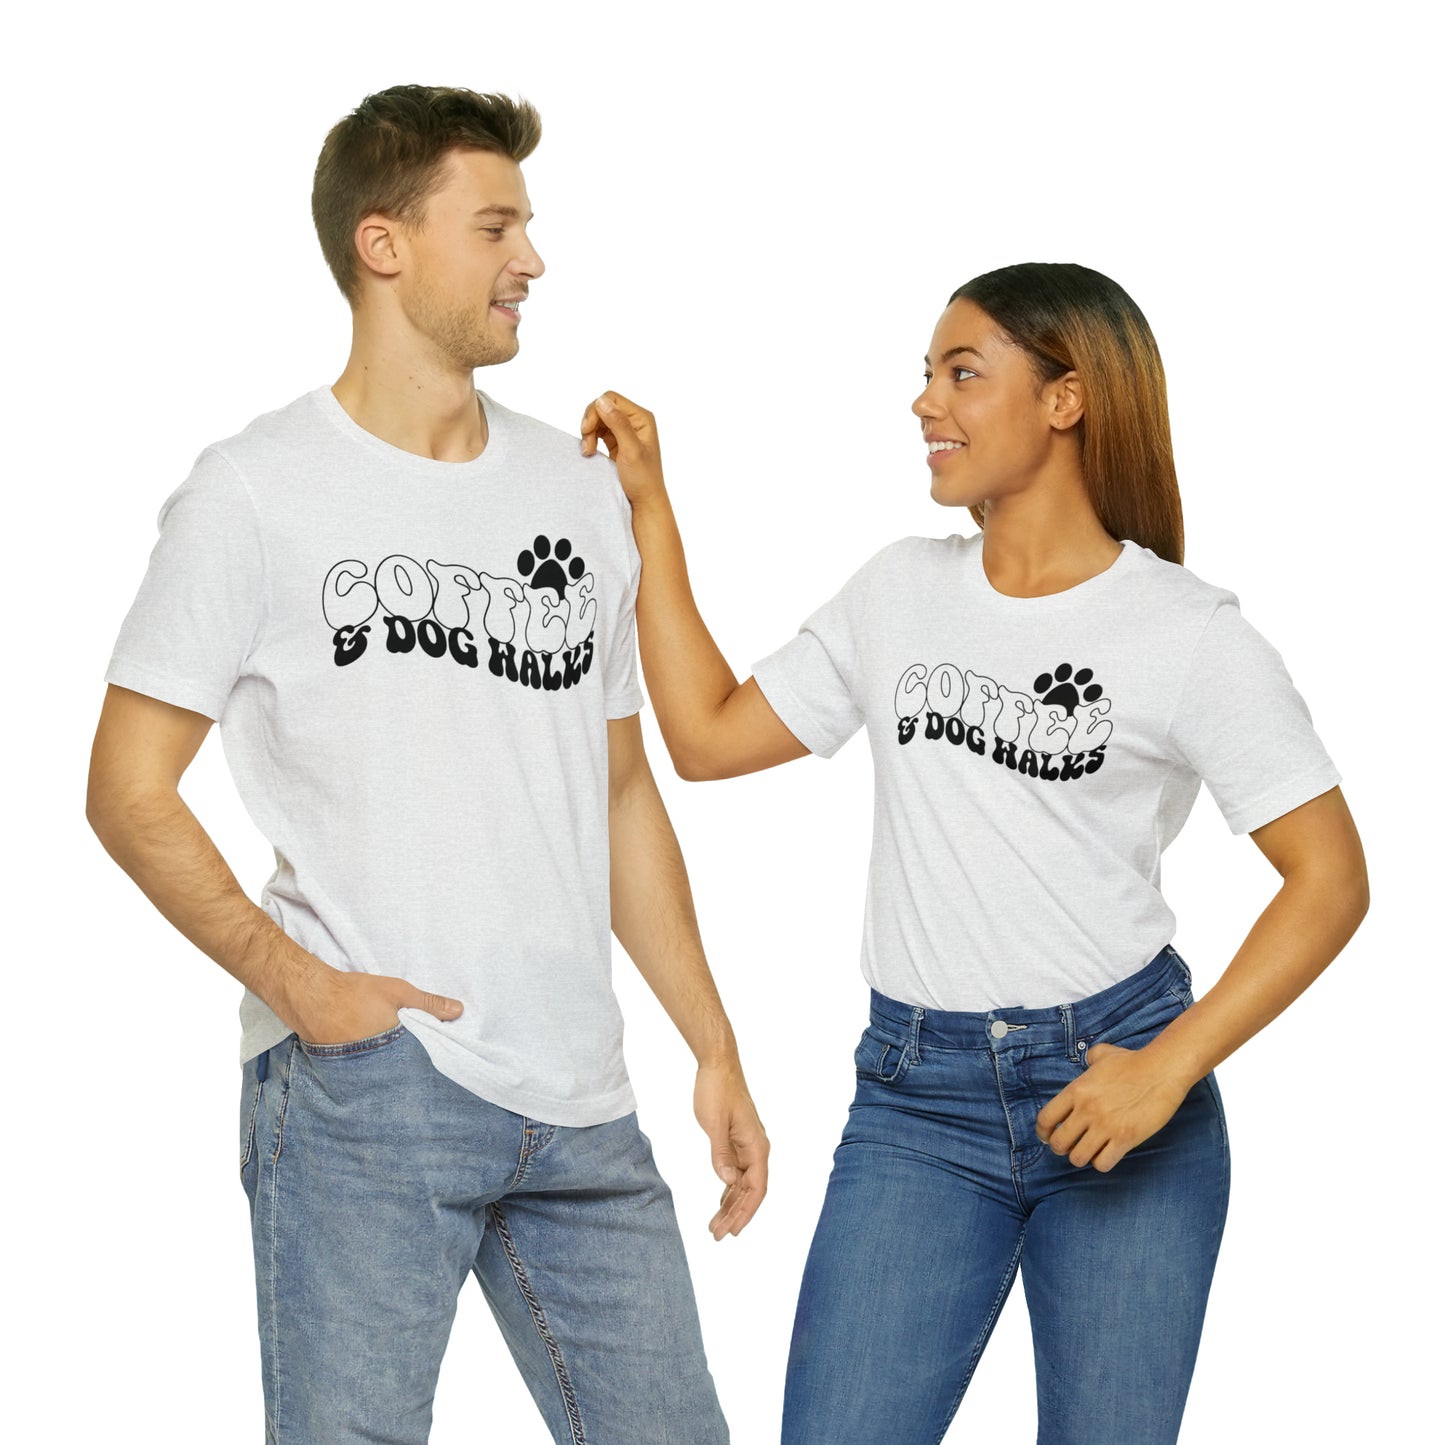 Coffee & Dog Walks Short Sleeve T-shirt